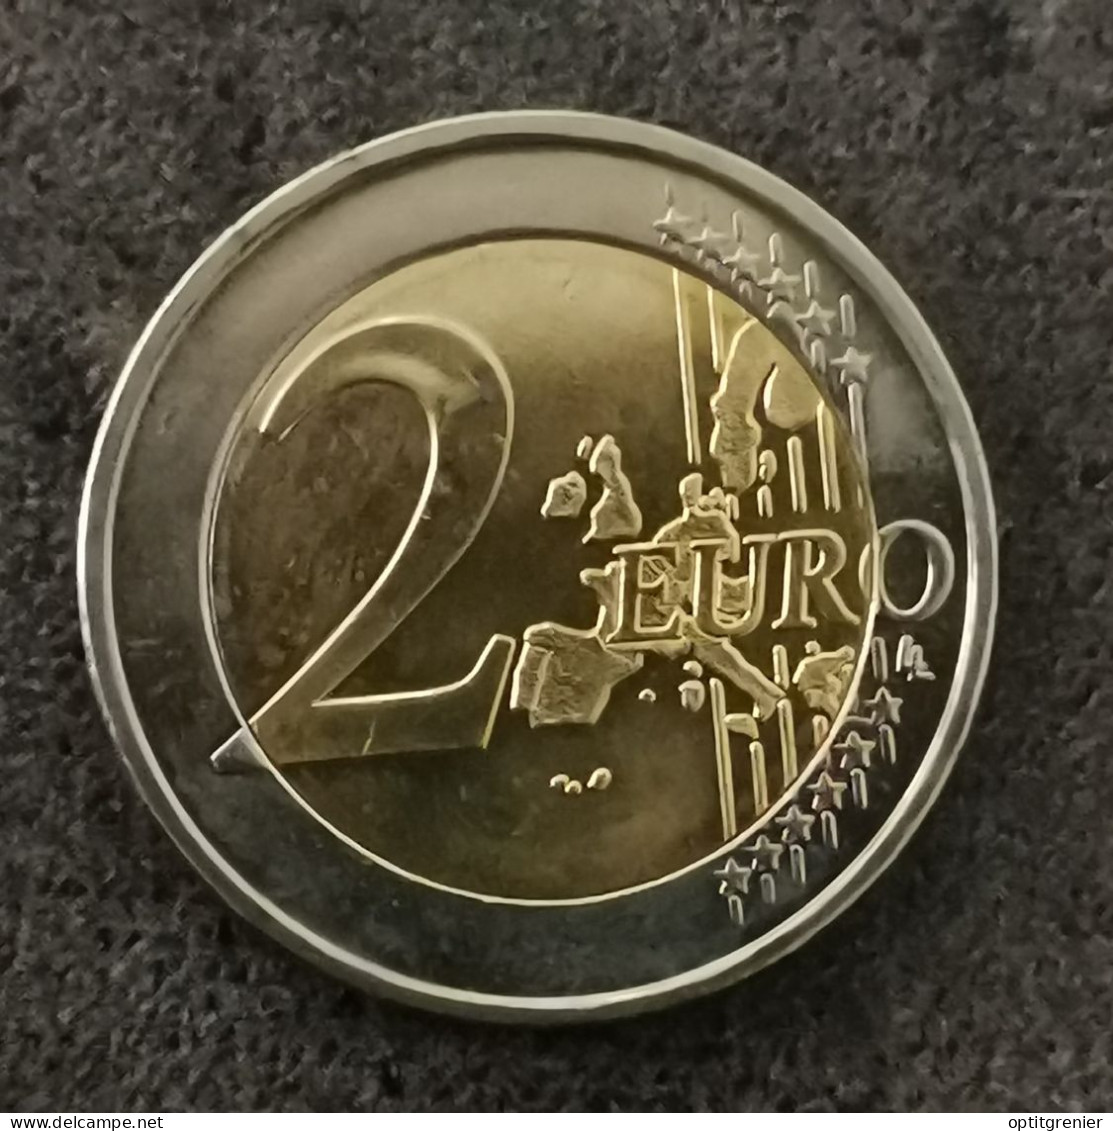 2 EURO 2003 GRECE / GREECE EUROS - Greece